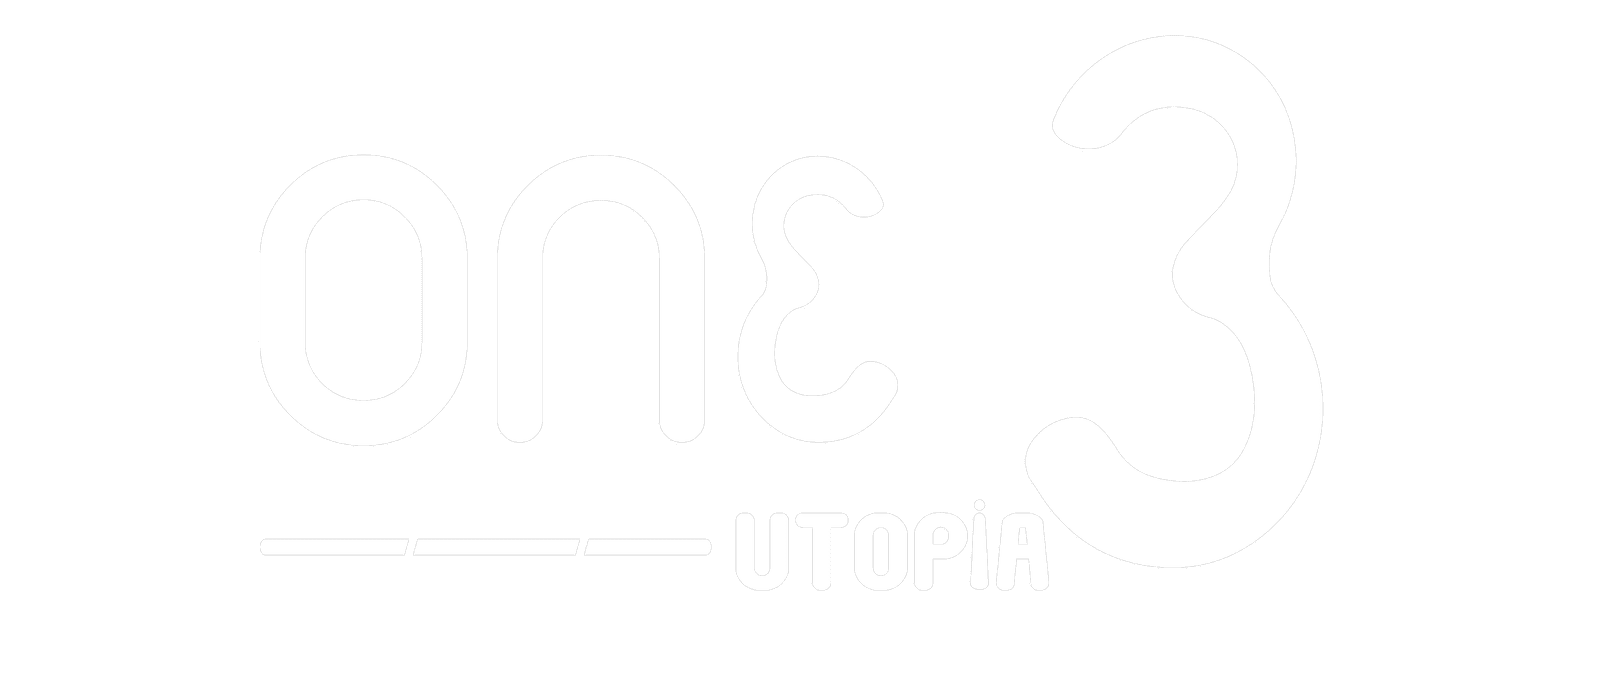 one 3 utopia white logo (2)